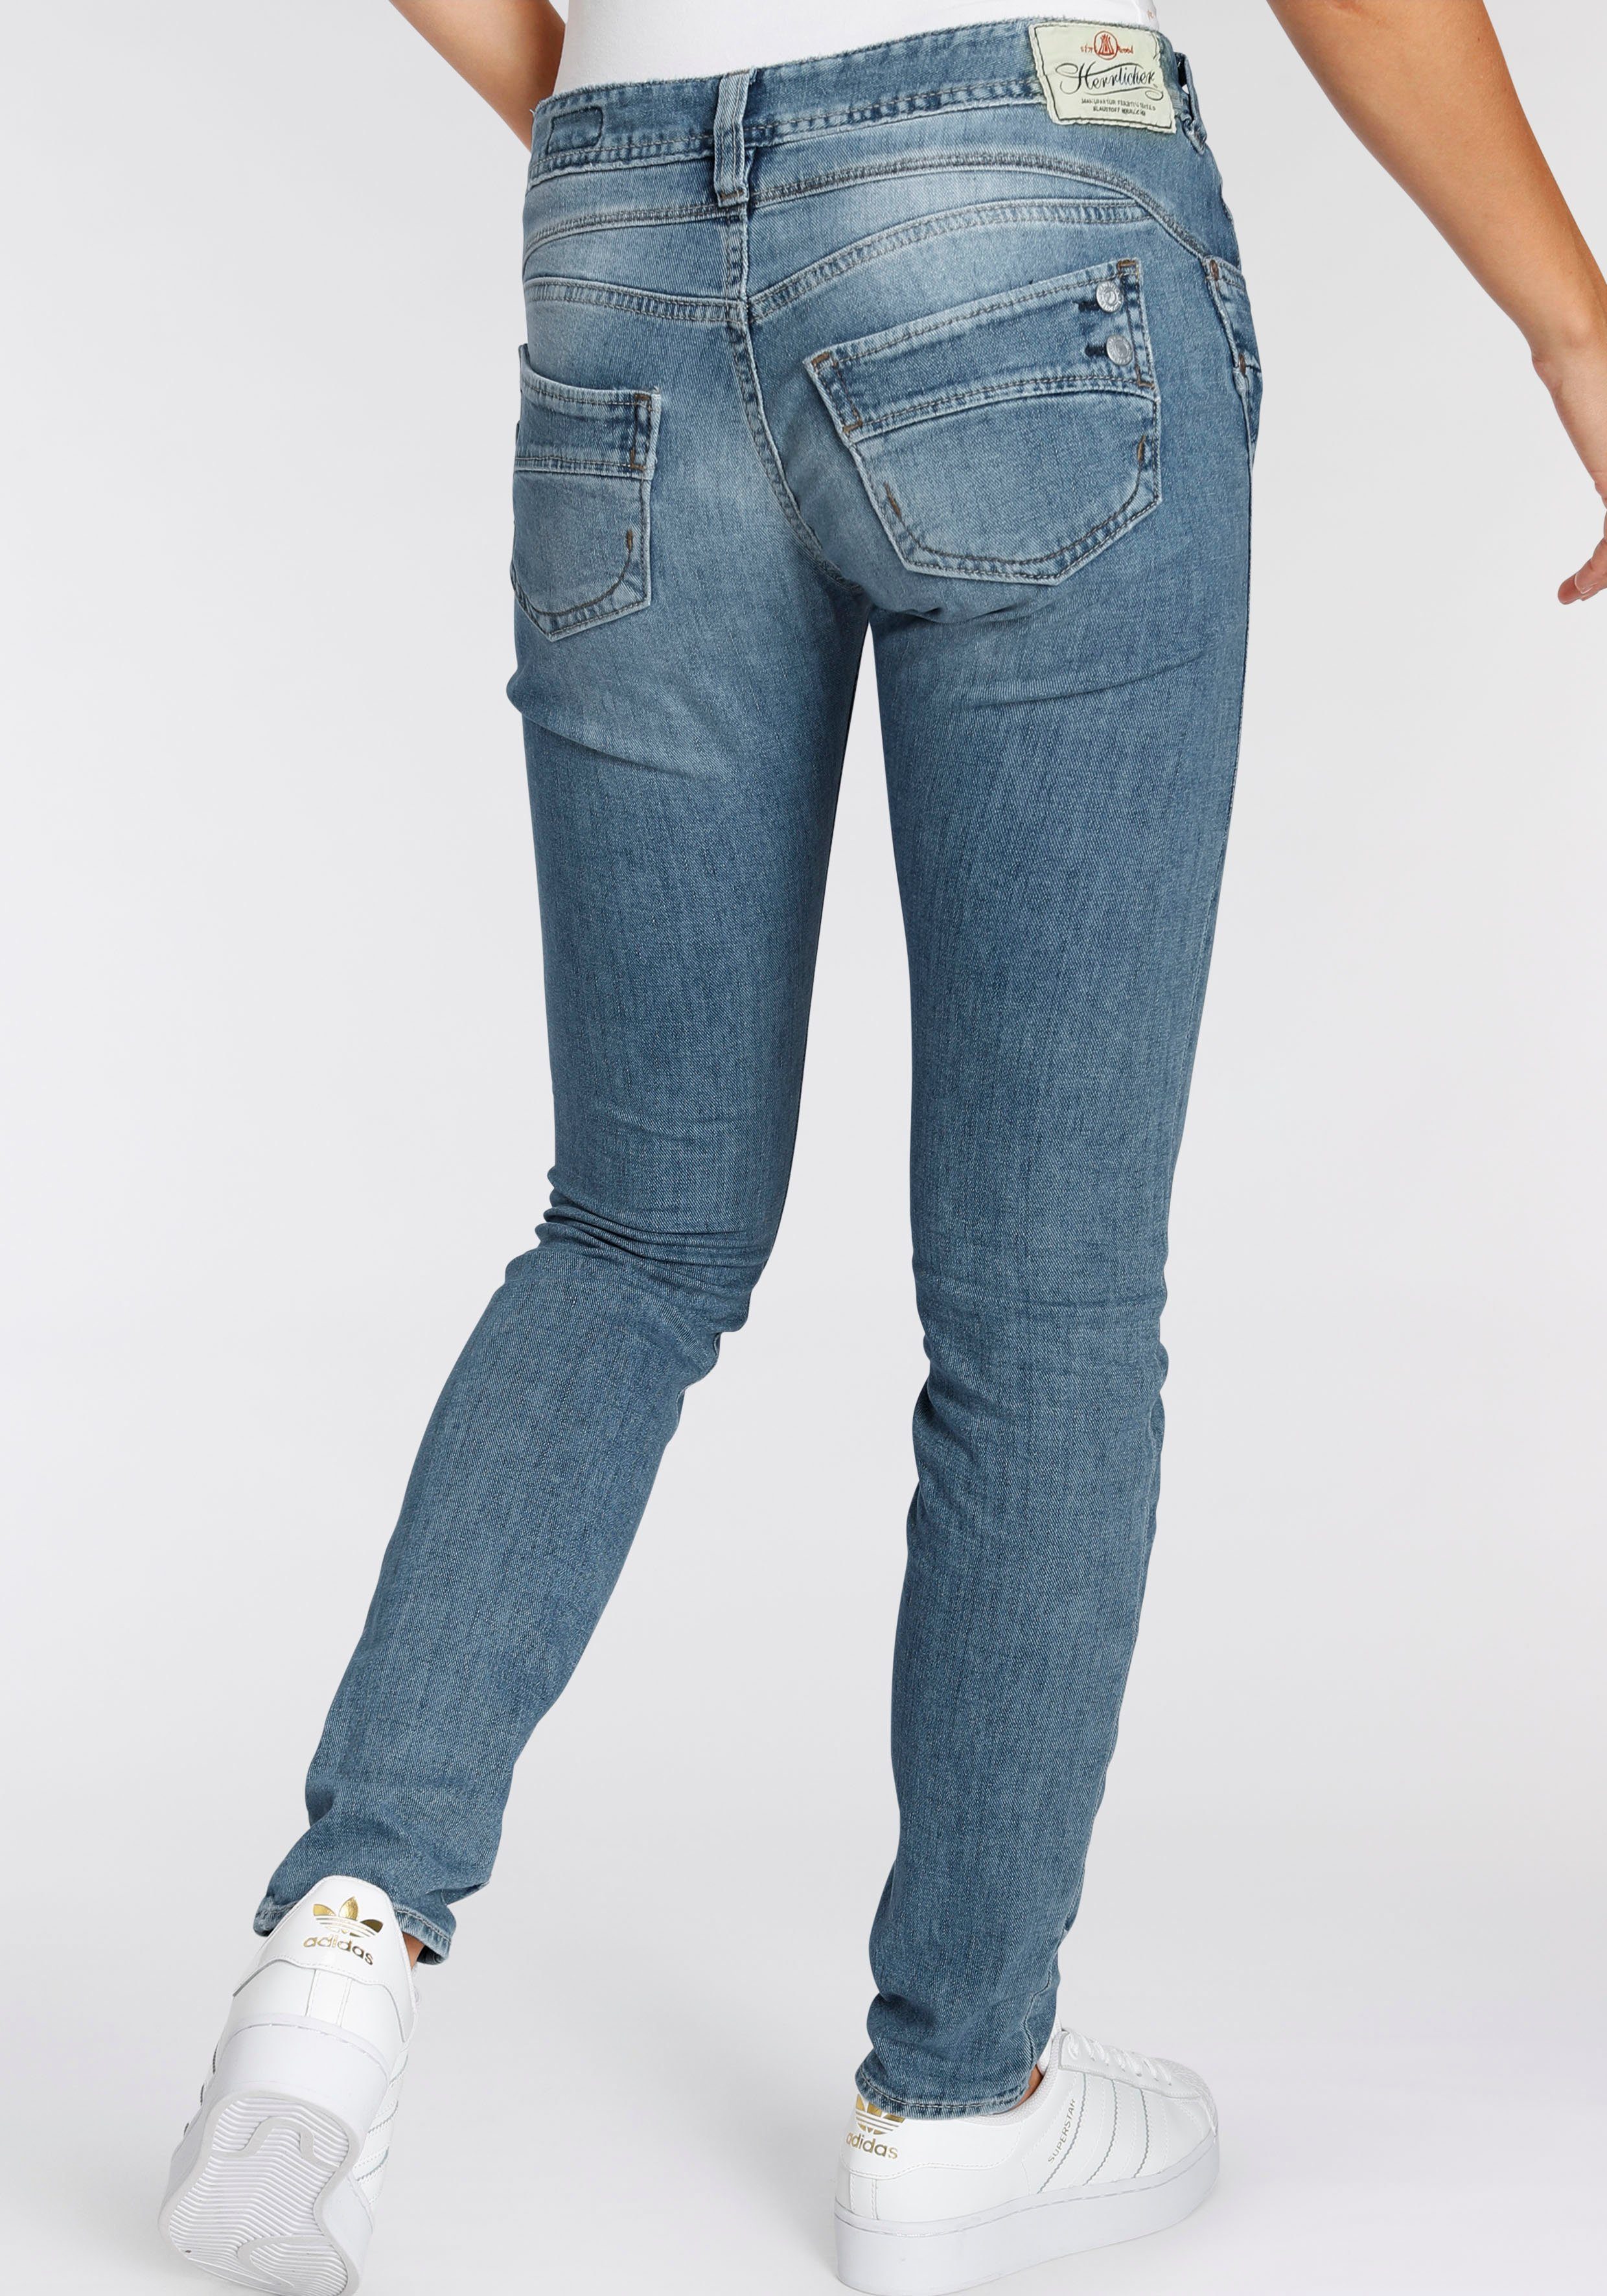 Herrlicher Slim-Fit Damen Jeans online kaufen | OTTO